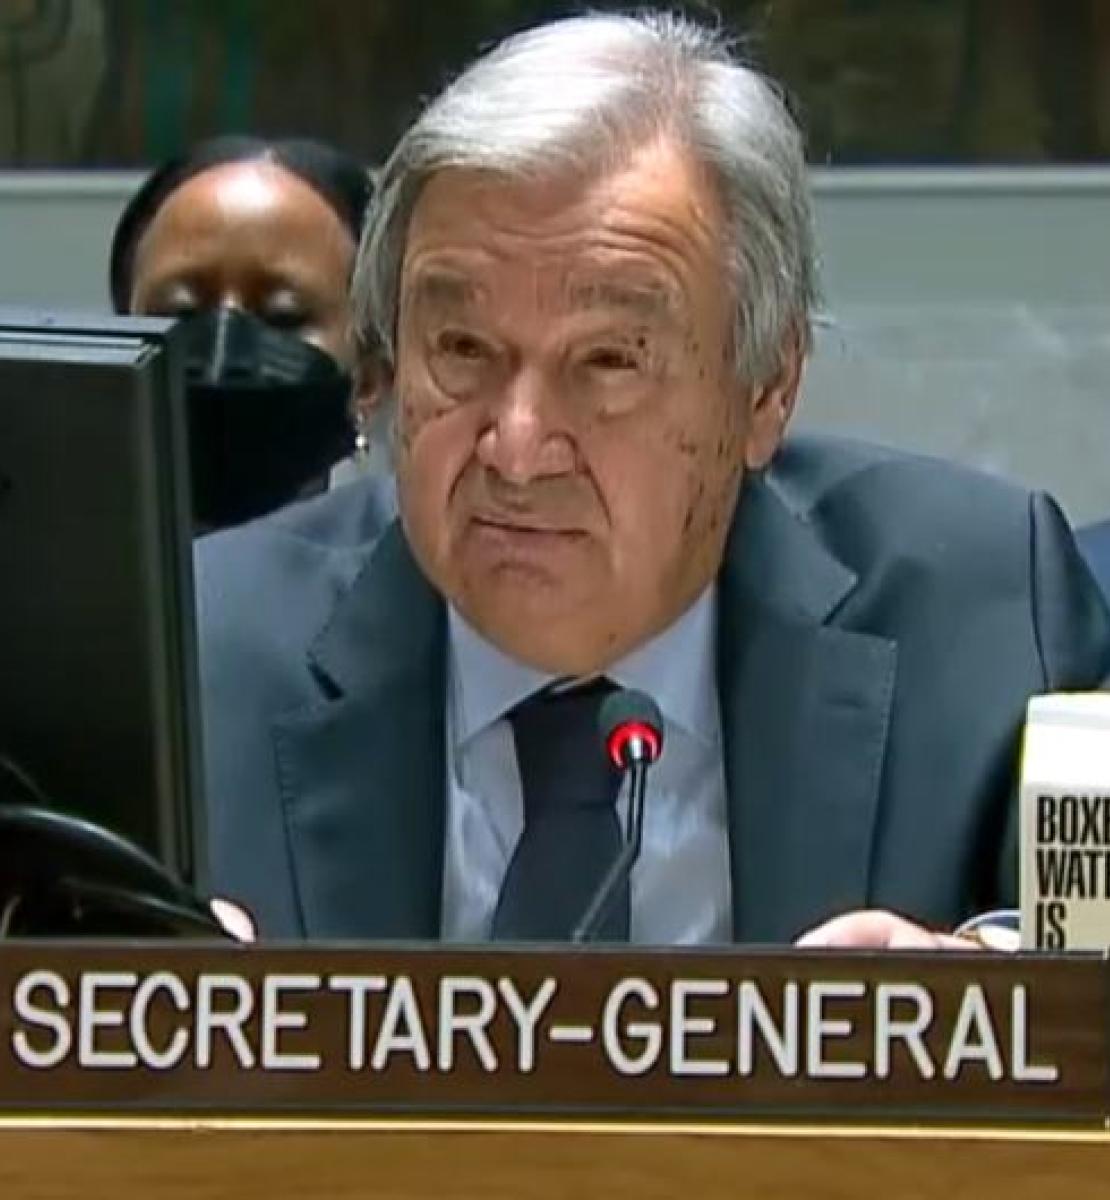 الأمين العام للأمم المتحدة يتحدث في مجلس الأمن.